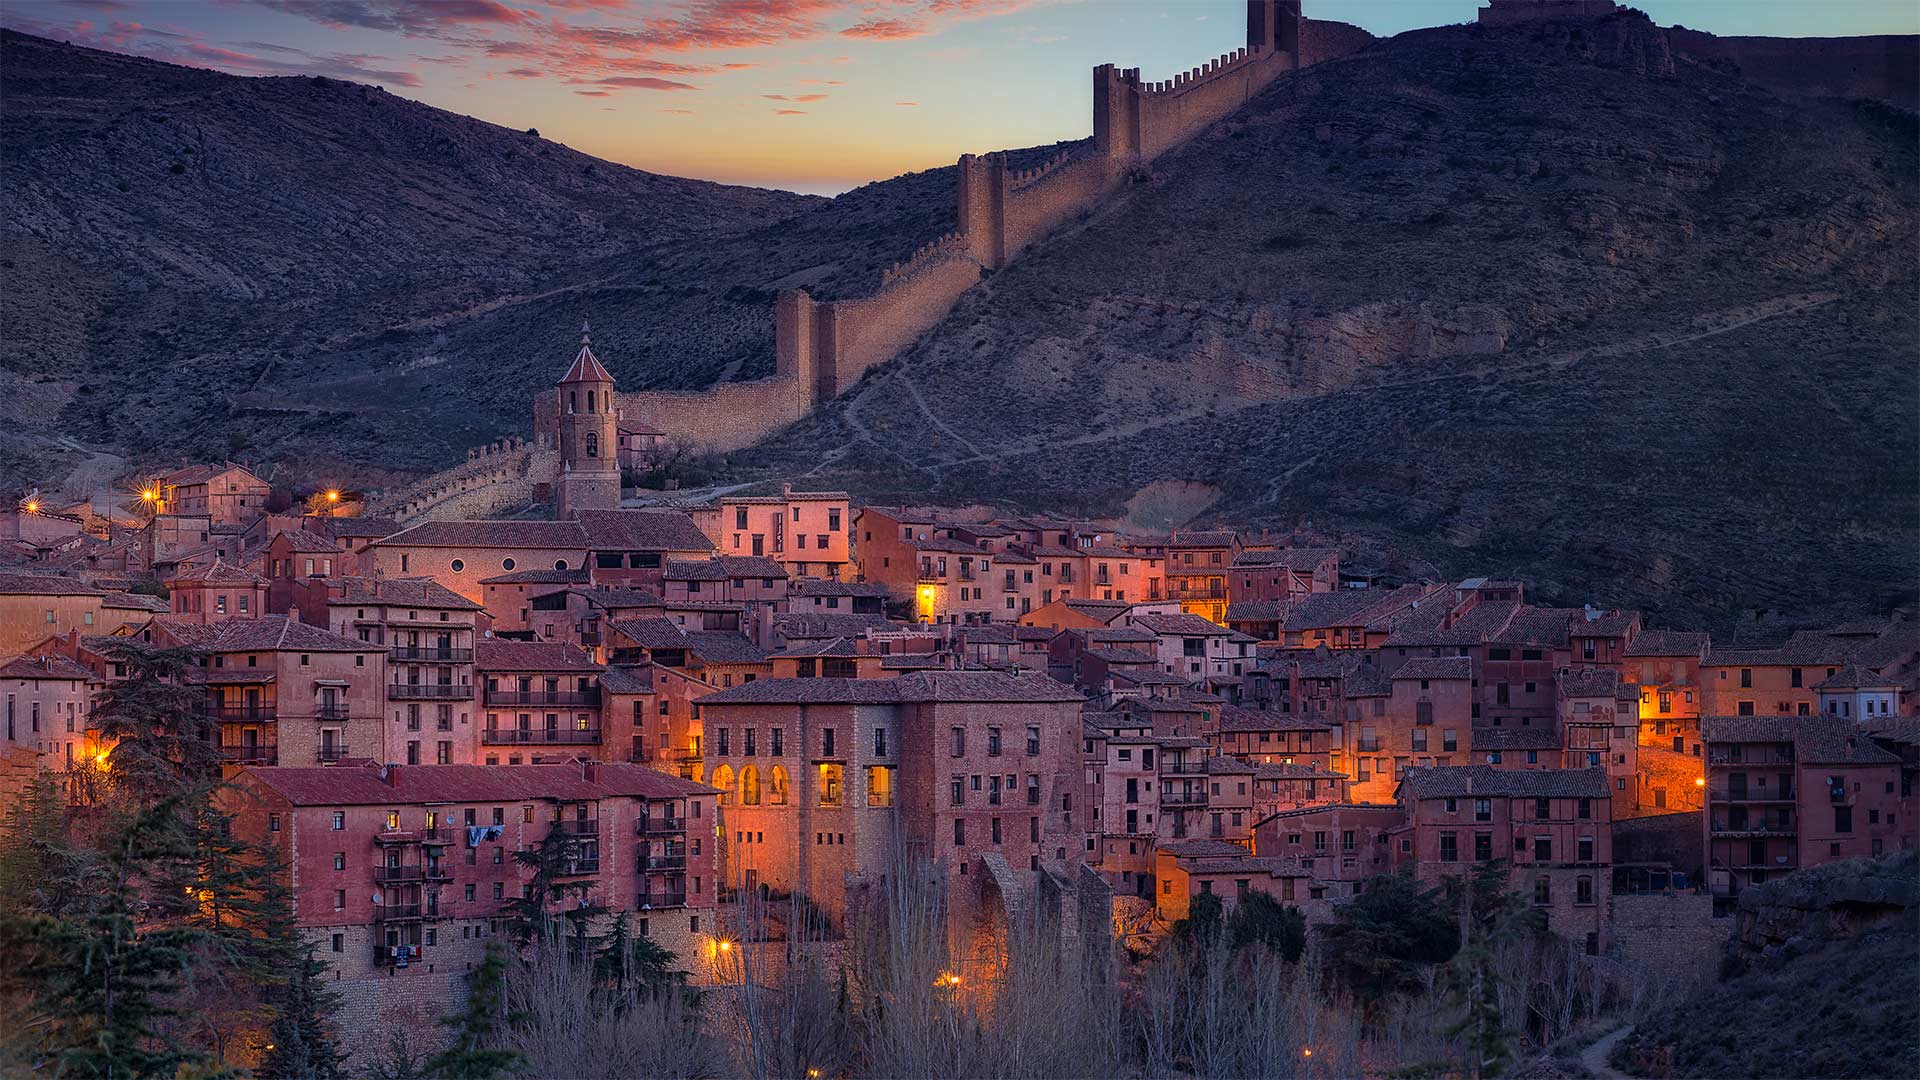 Albarracín, Spain - Domingo Leiva/Getty Images)